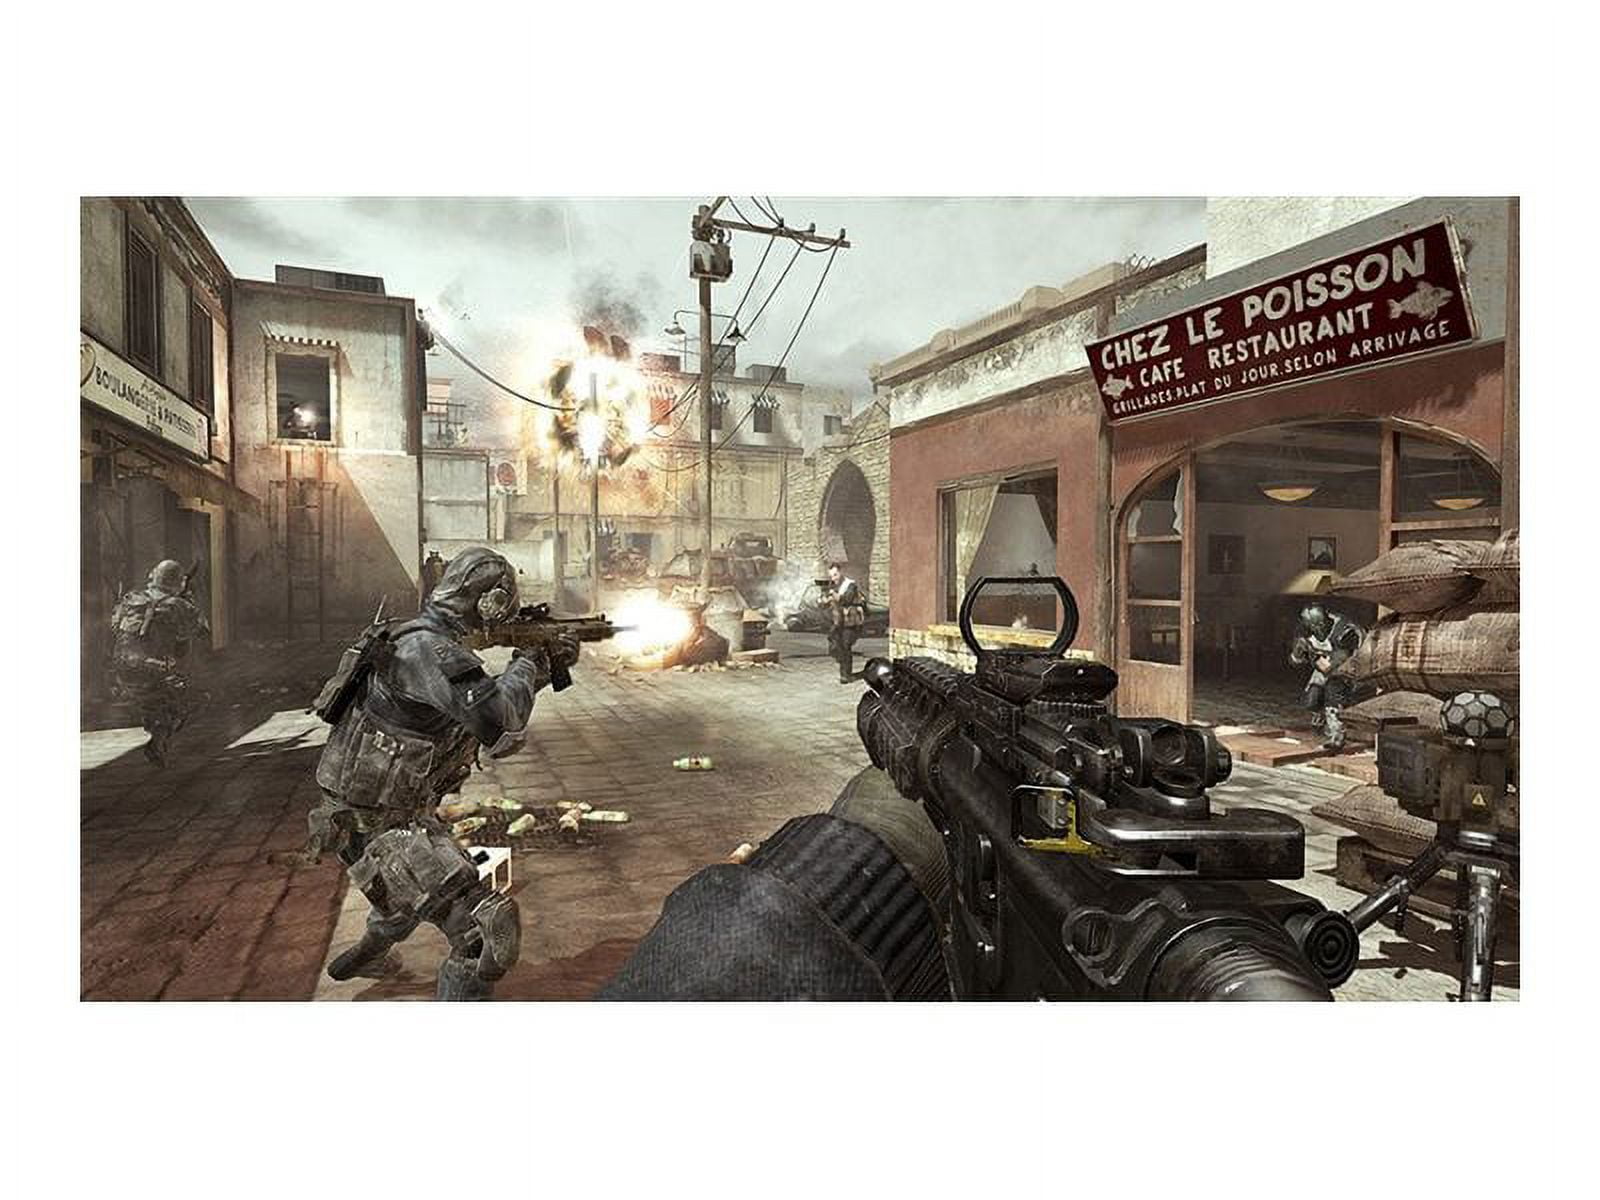  Call of Duty: Modern Warfare 3 - Playstation 3